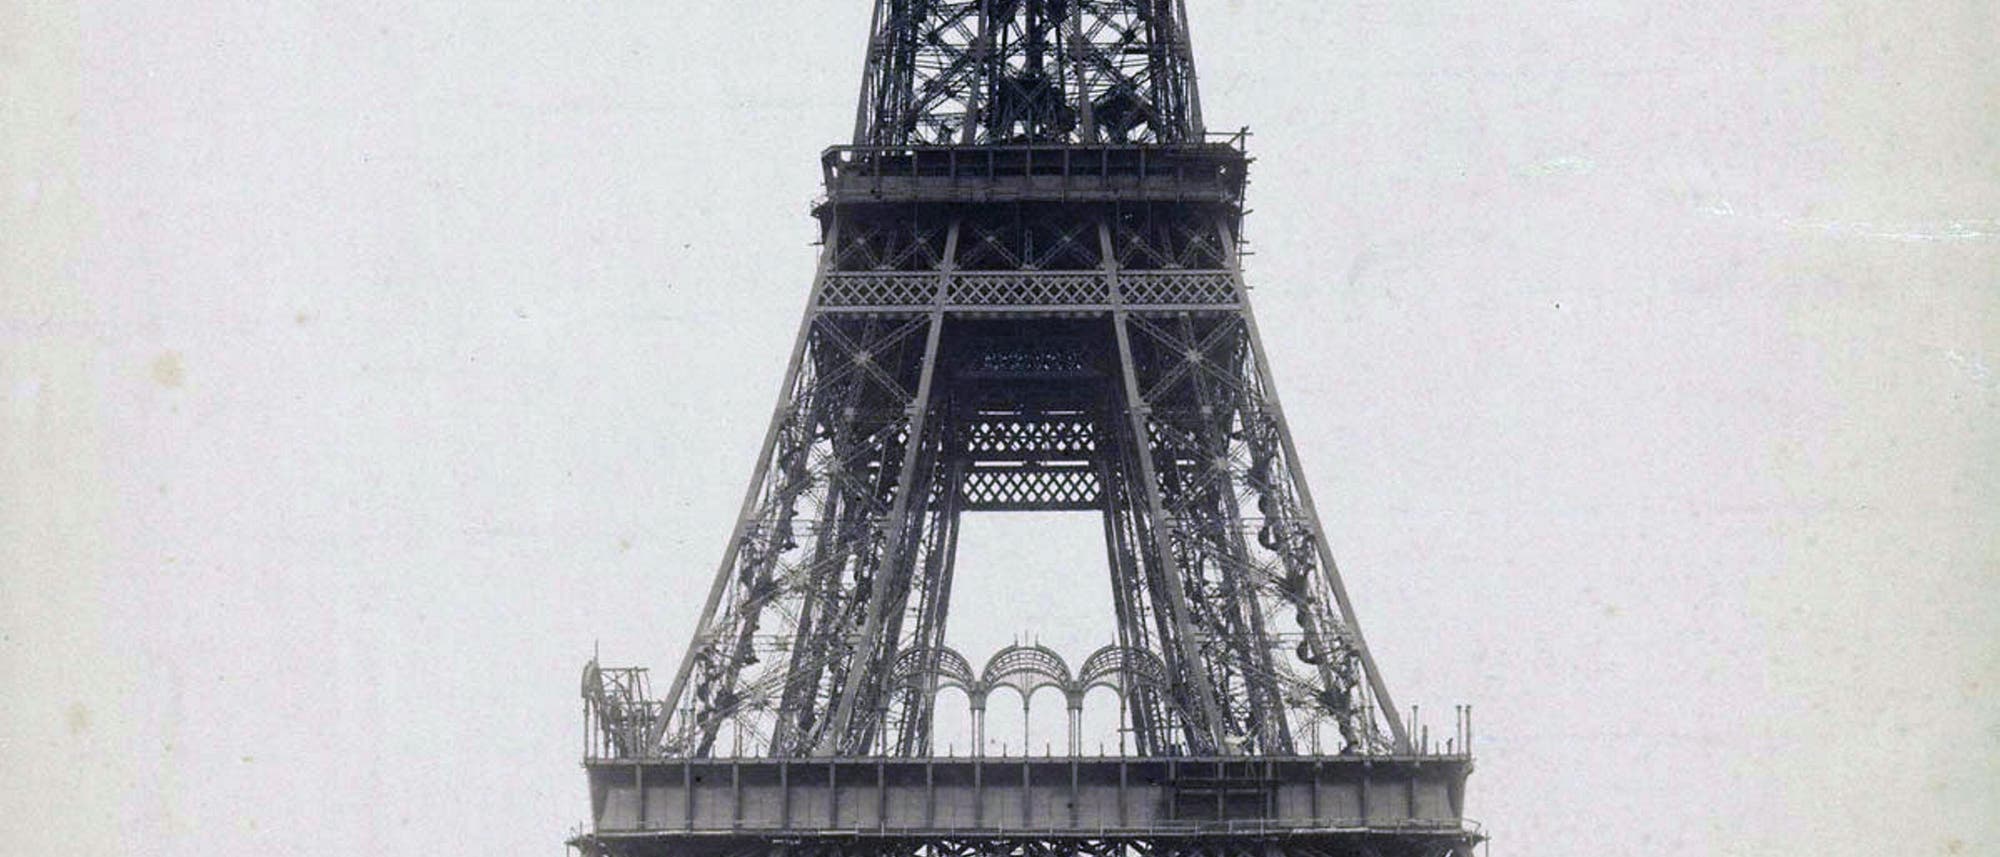 Der Eiffelturm wurde innerhalb von zwei Jahren erbaut – zwischen 1887 und 1889. Das Bild zeigt den Bauzustand im Jahr 1888.